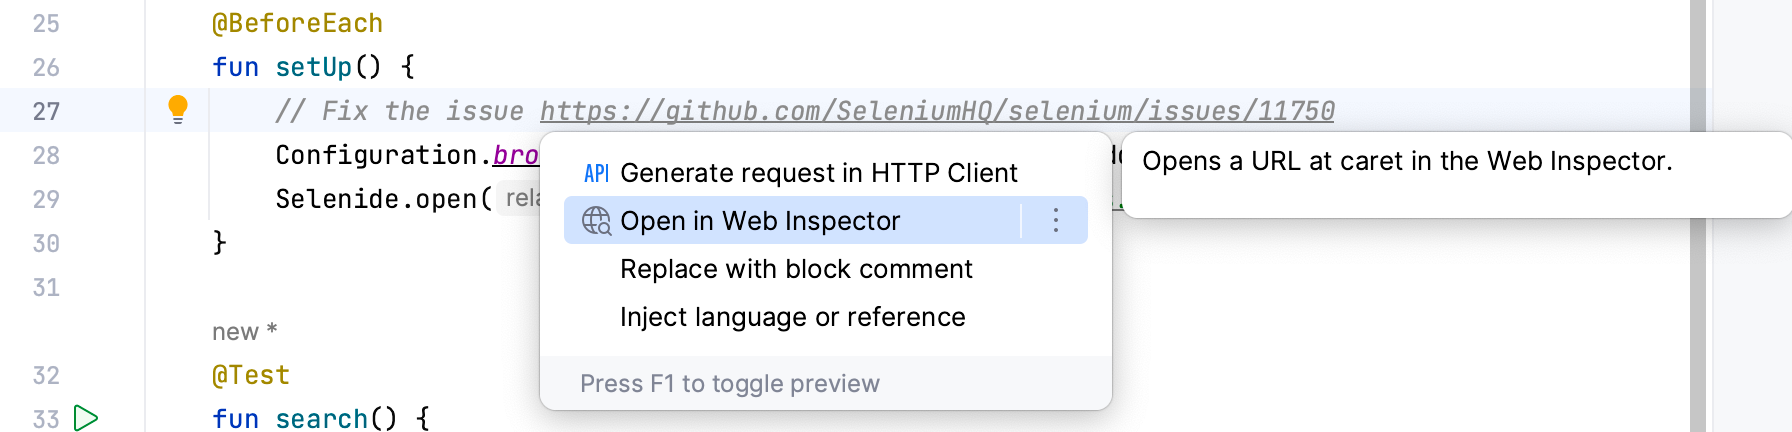 Open in Web Inspector